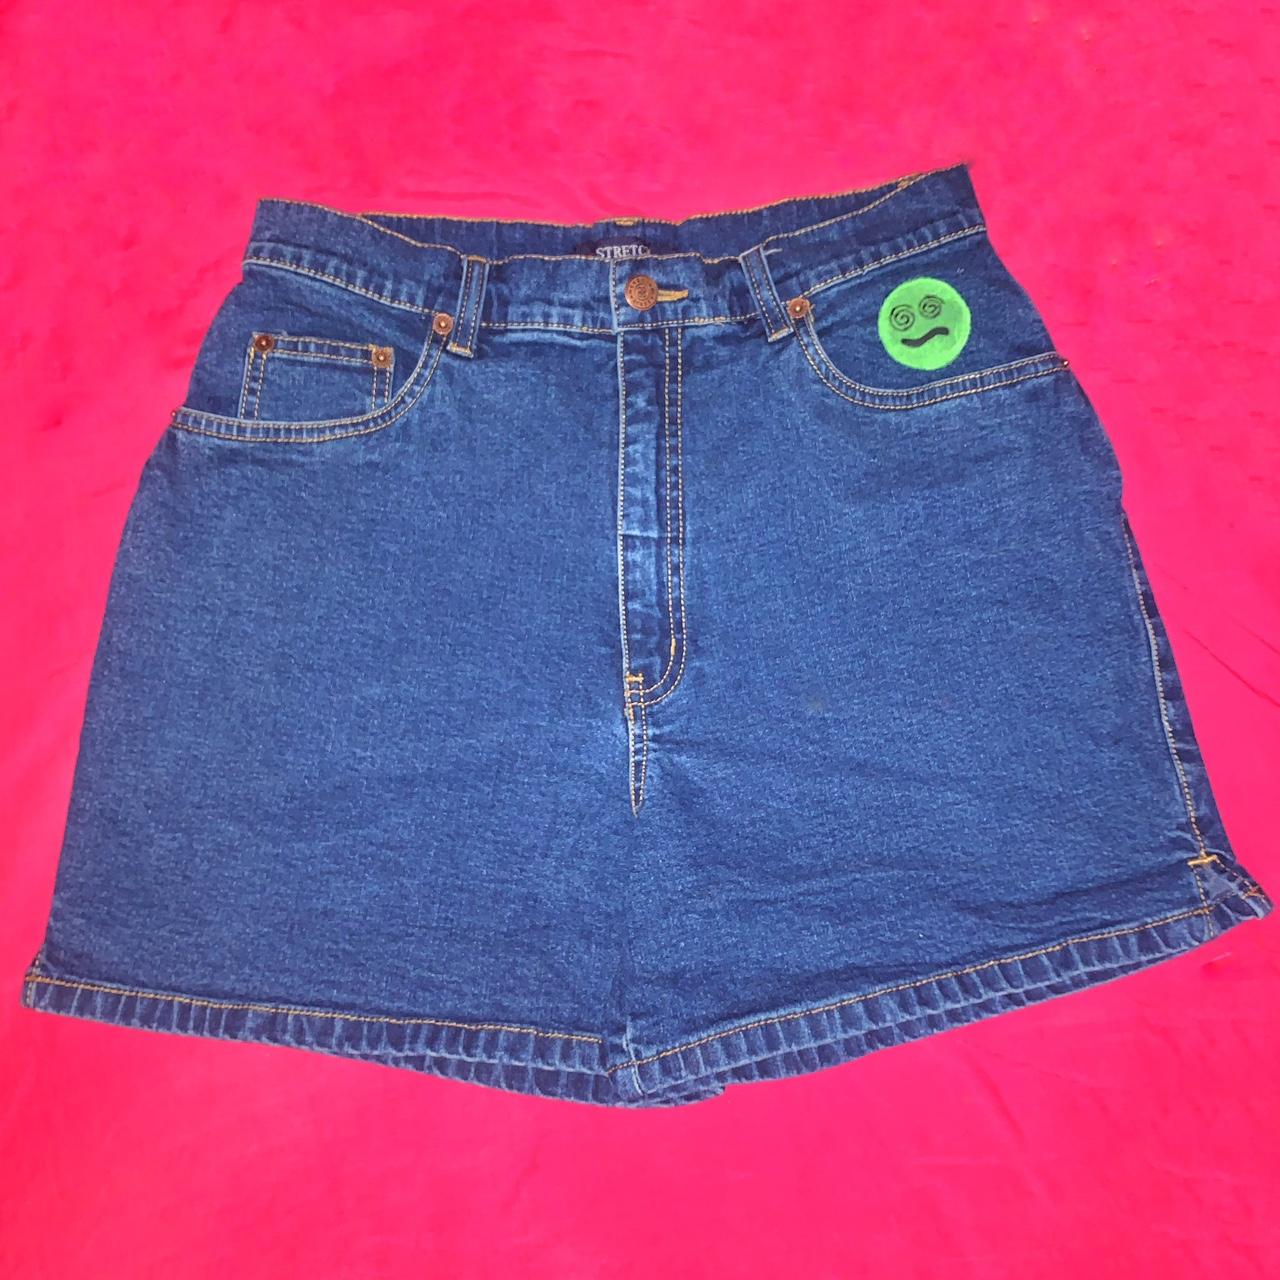 Bill Blass Women's Blue and Green Shorts | Depop